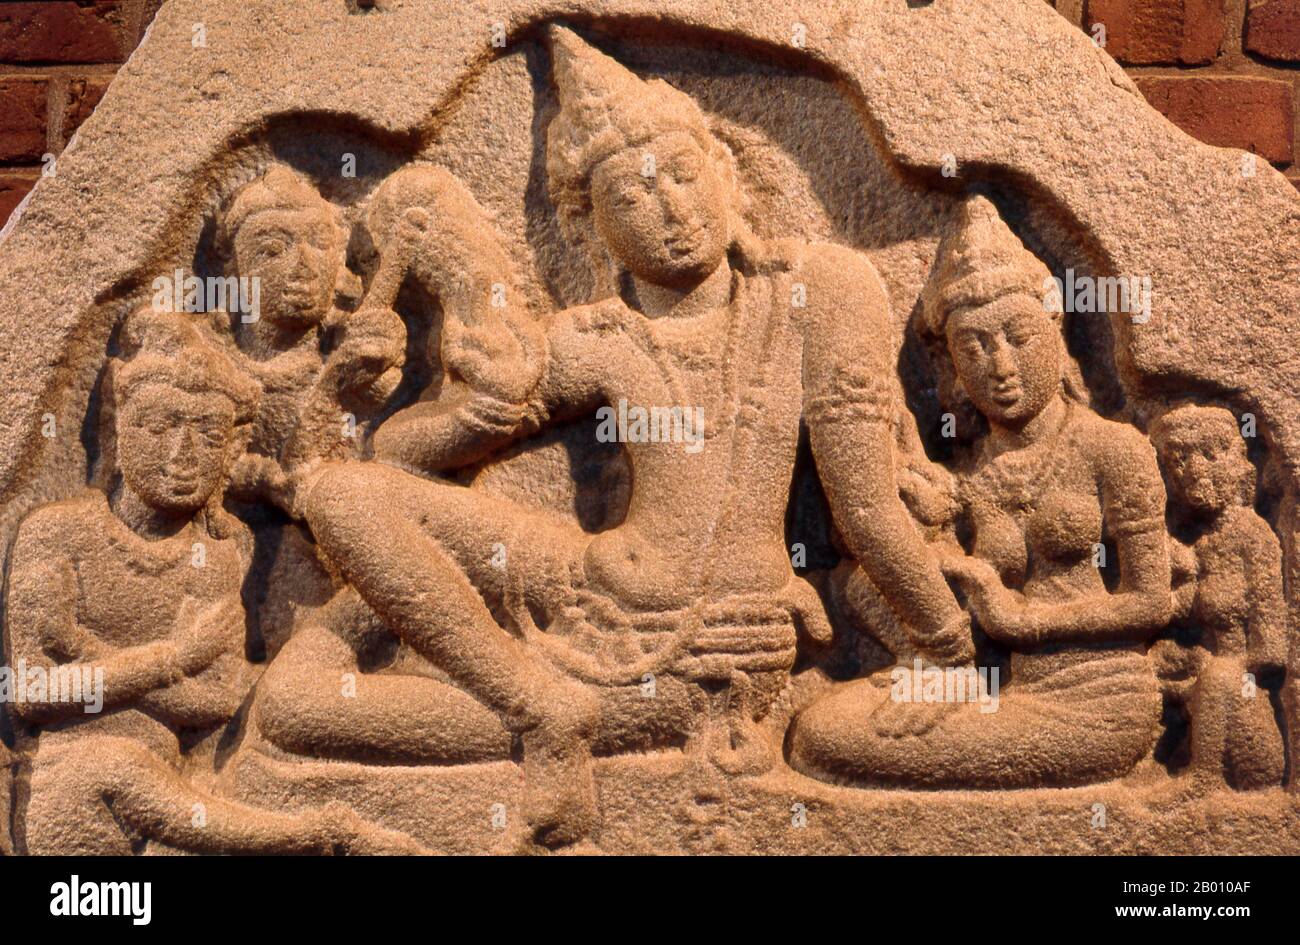 Sri Lanka : frise de la famille royale, musée du temple d'Isurumuniya, Anuradhapura. Isurumuniya Vihara est un temple de roche construit pendant le règne du roi Devanampiya Tissa (r. 307 - 267 BCE). Anuradhapura est l'une des anciennes capitales du Sri Lanka et célèbre pour ses ruines bien conservées. Du 4ème siècle avant notre ère jusqu'au début du XIe siècle avant notre ère c'était la capitale. Pendant cette période, il est resté l'un des centres de pouvoir politique et de vie urbaine les plus stables et les plus durables d'Asie du Sud. La ville antique, considérée sacrée pour le monde bouddhiste, est aujourd'hui entourée de monastères. Banque D'Images